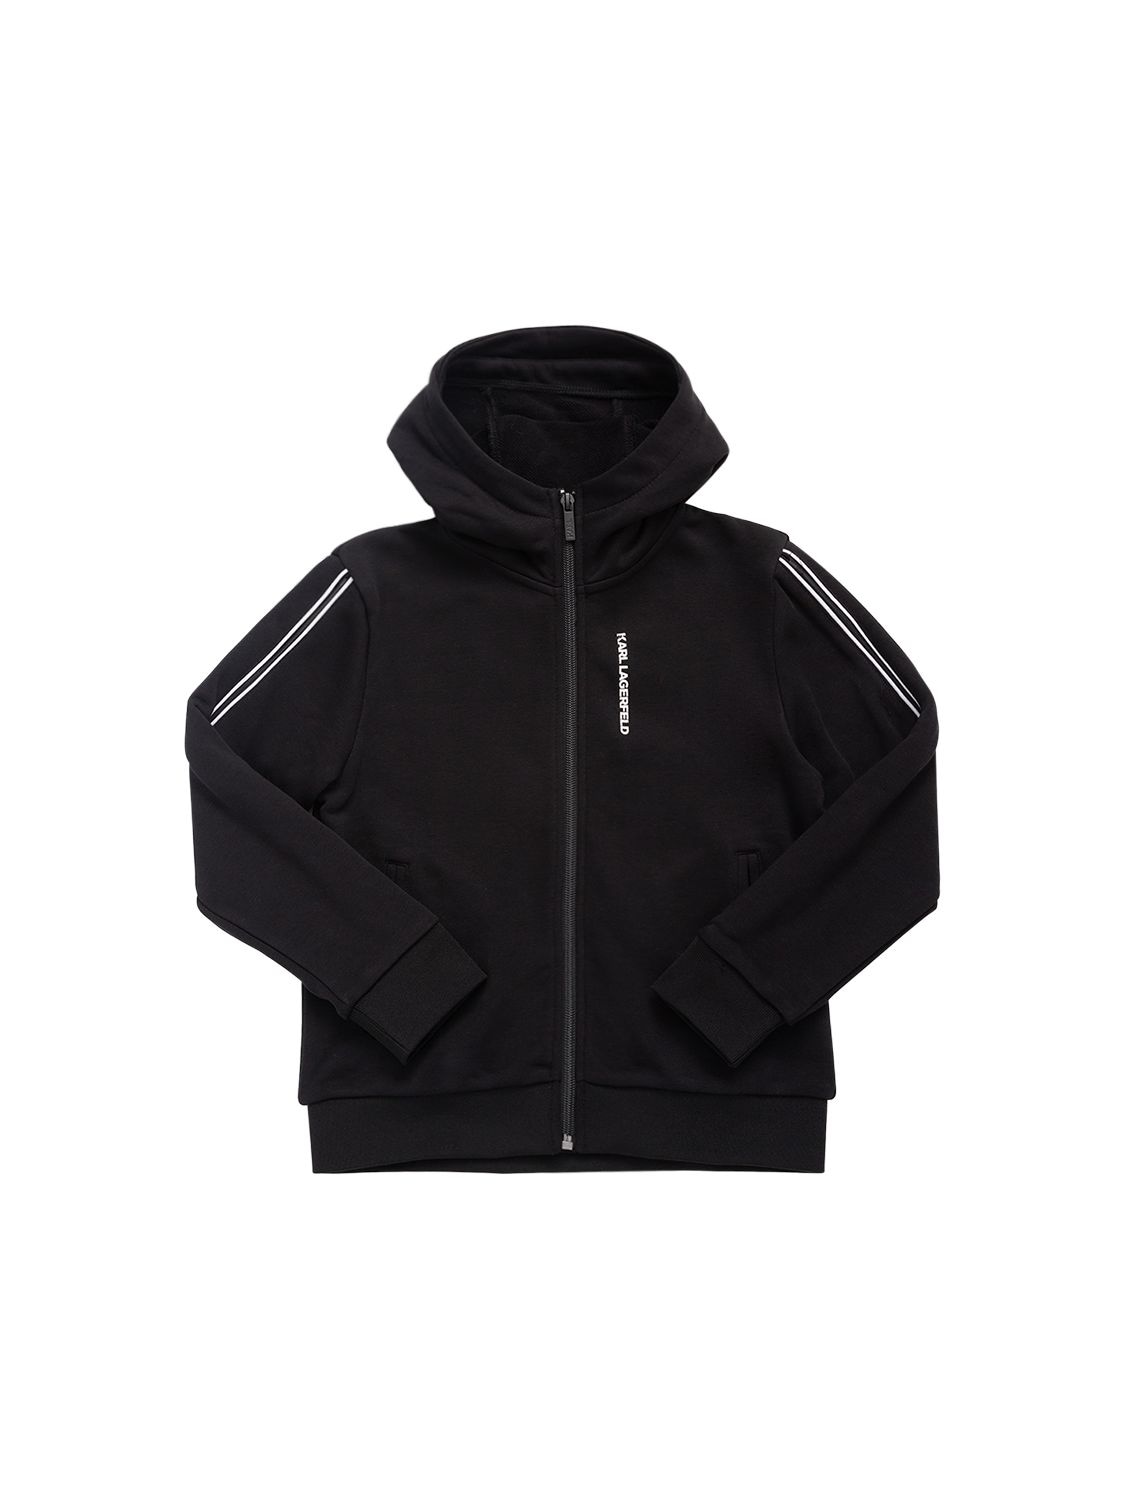 Karl Lagerfeld Kids' Cotton Blend Zip-up Hoodie W/logo In Black